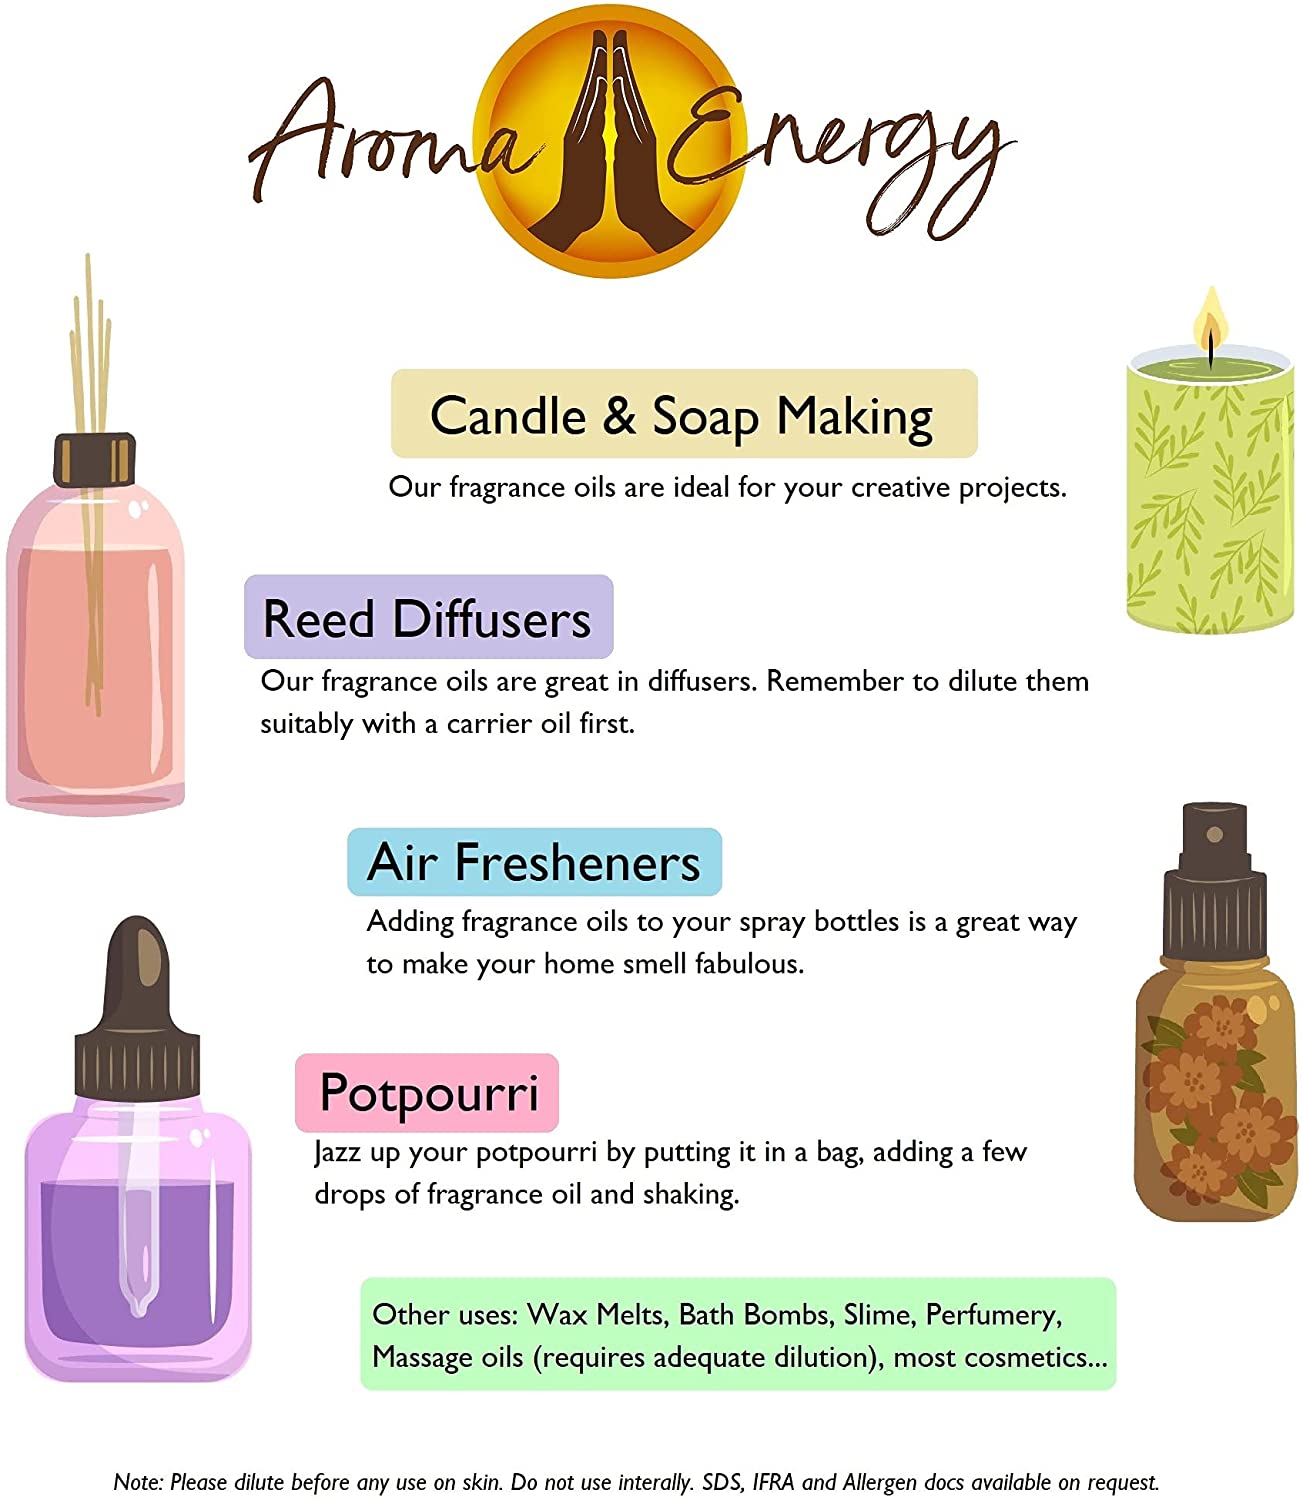 Cinnamon Fragrance Oil - Aroma Energy